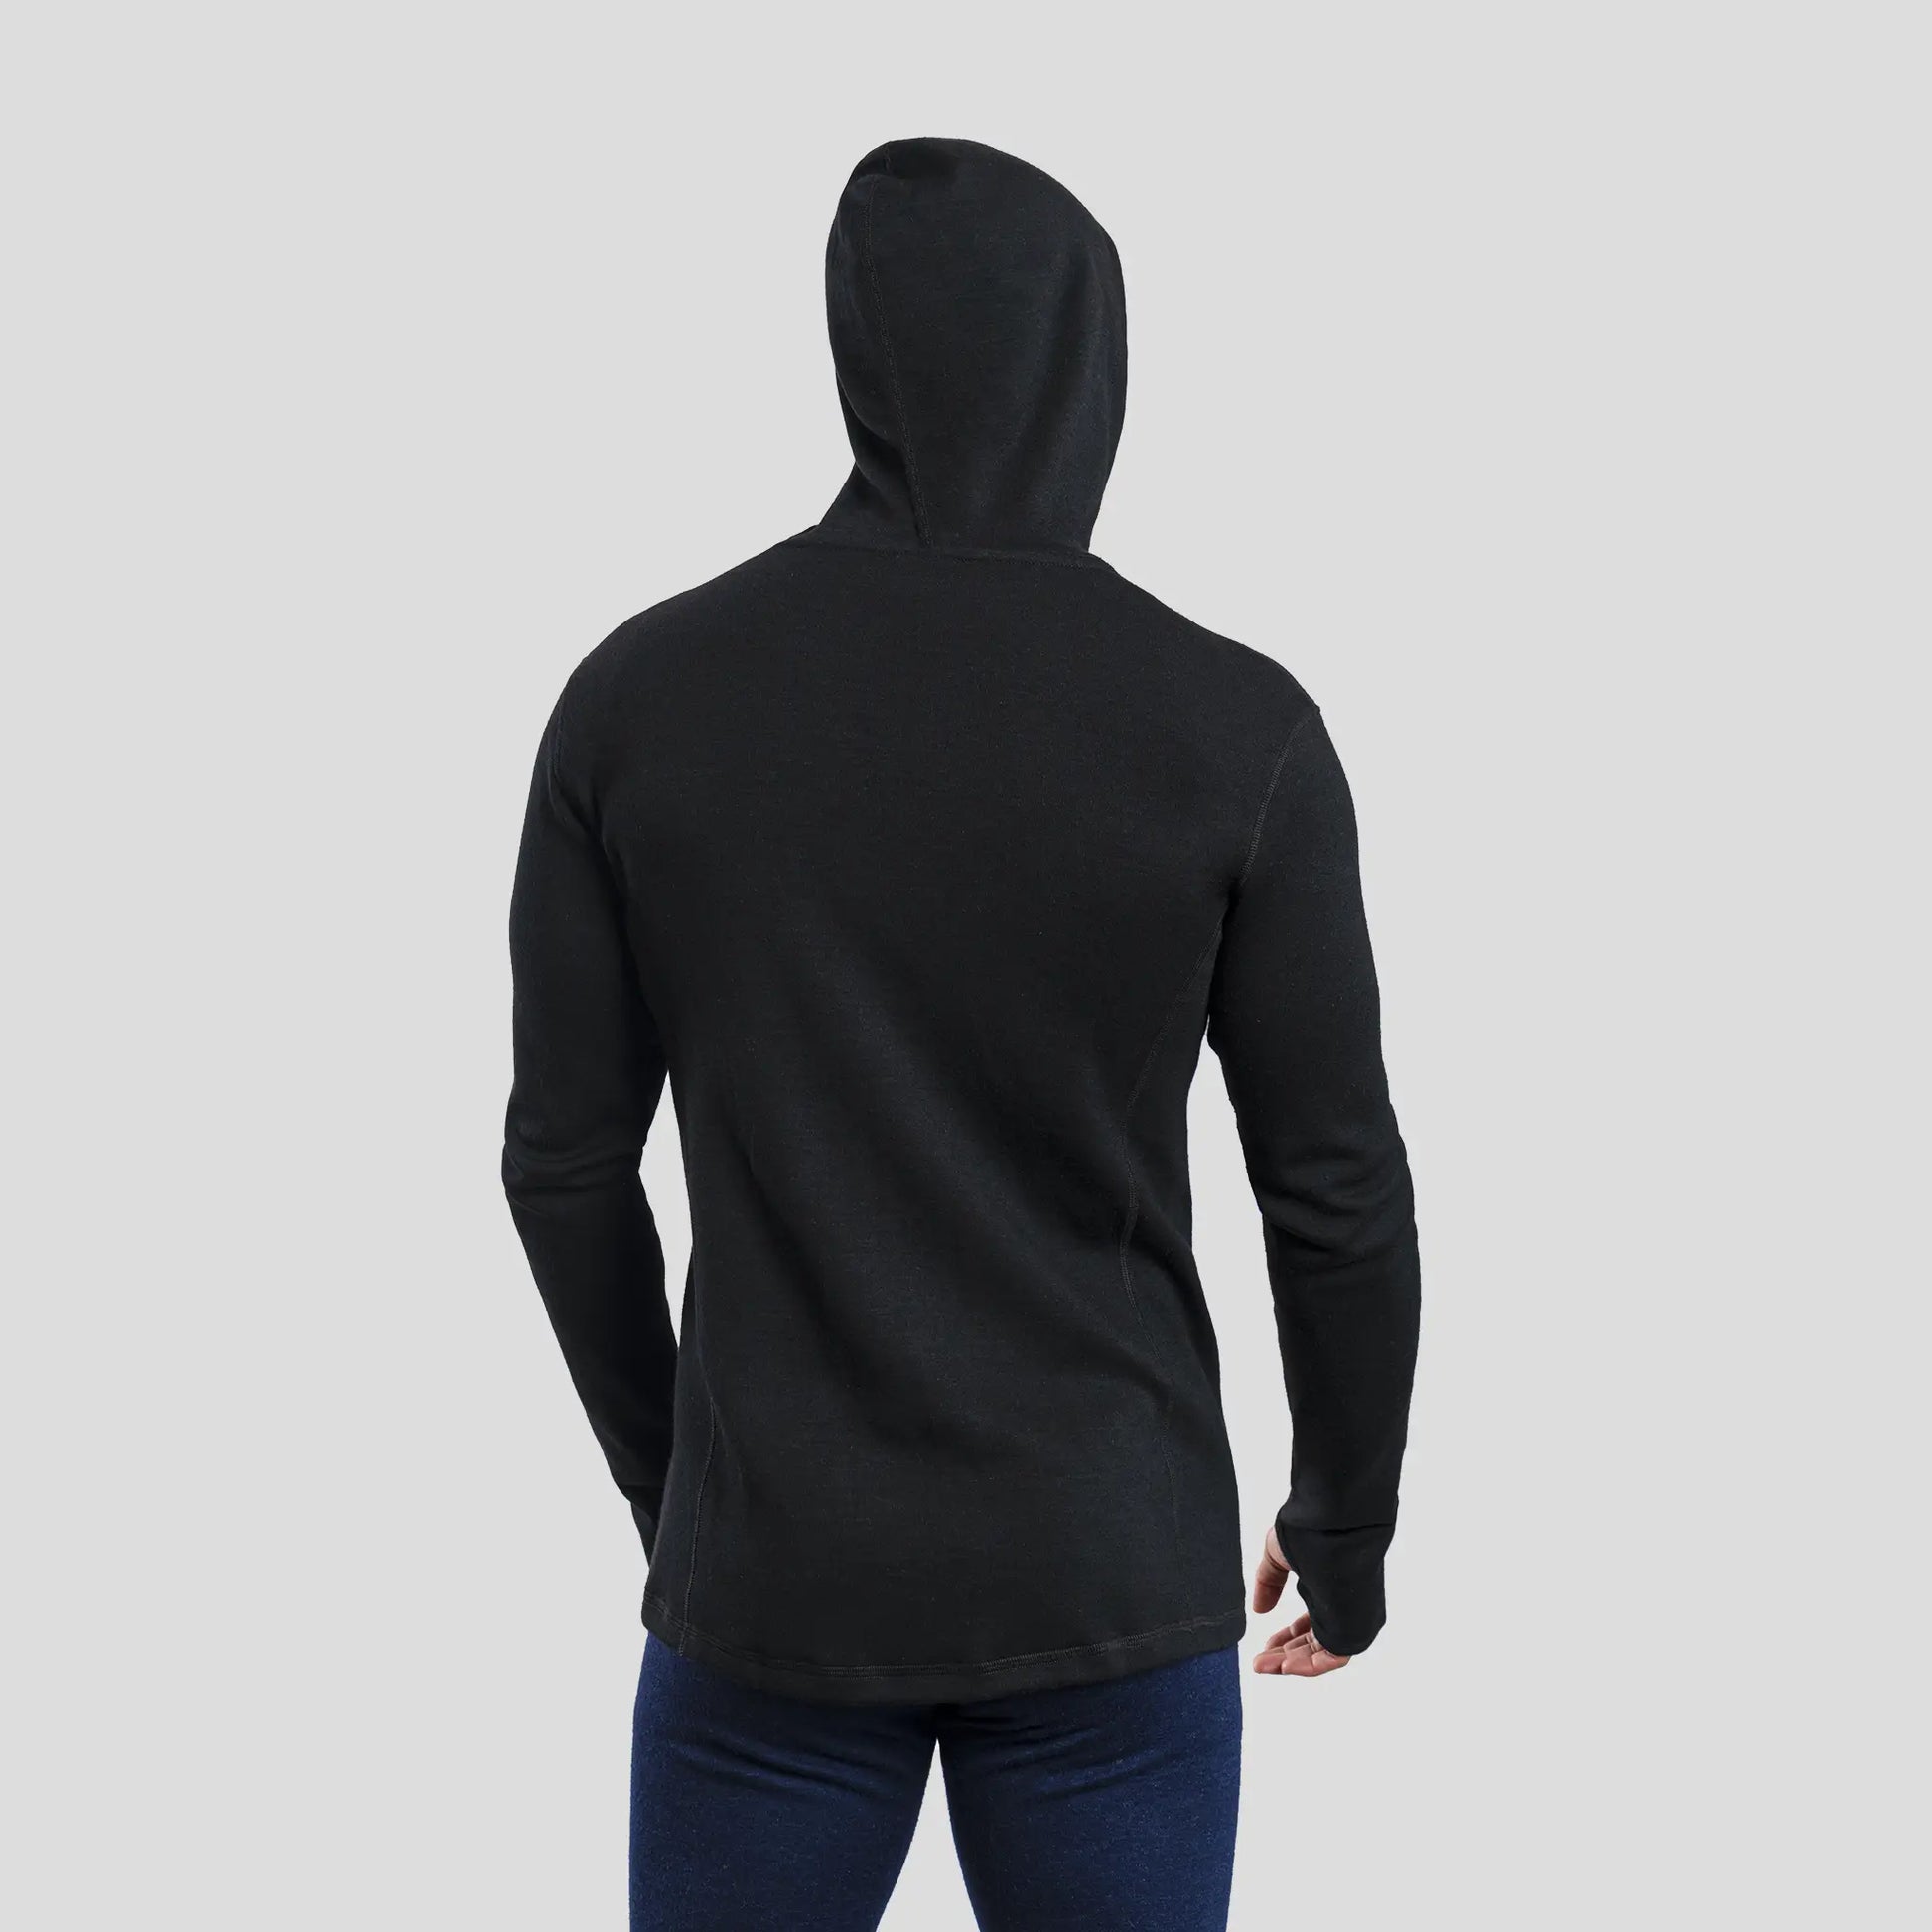 mens warmest hoodie jacket full zip color black